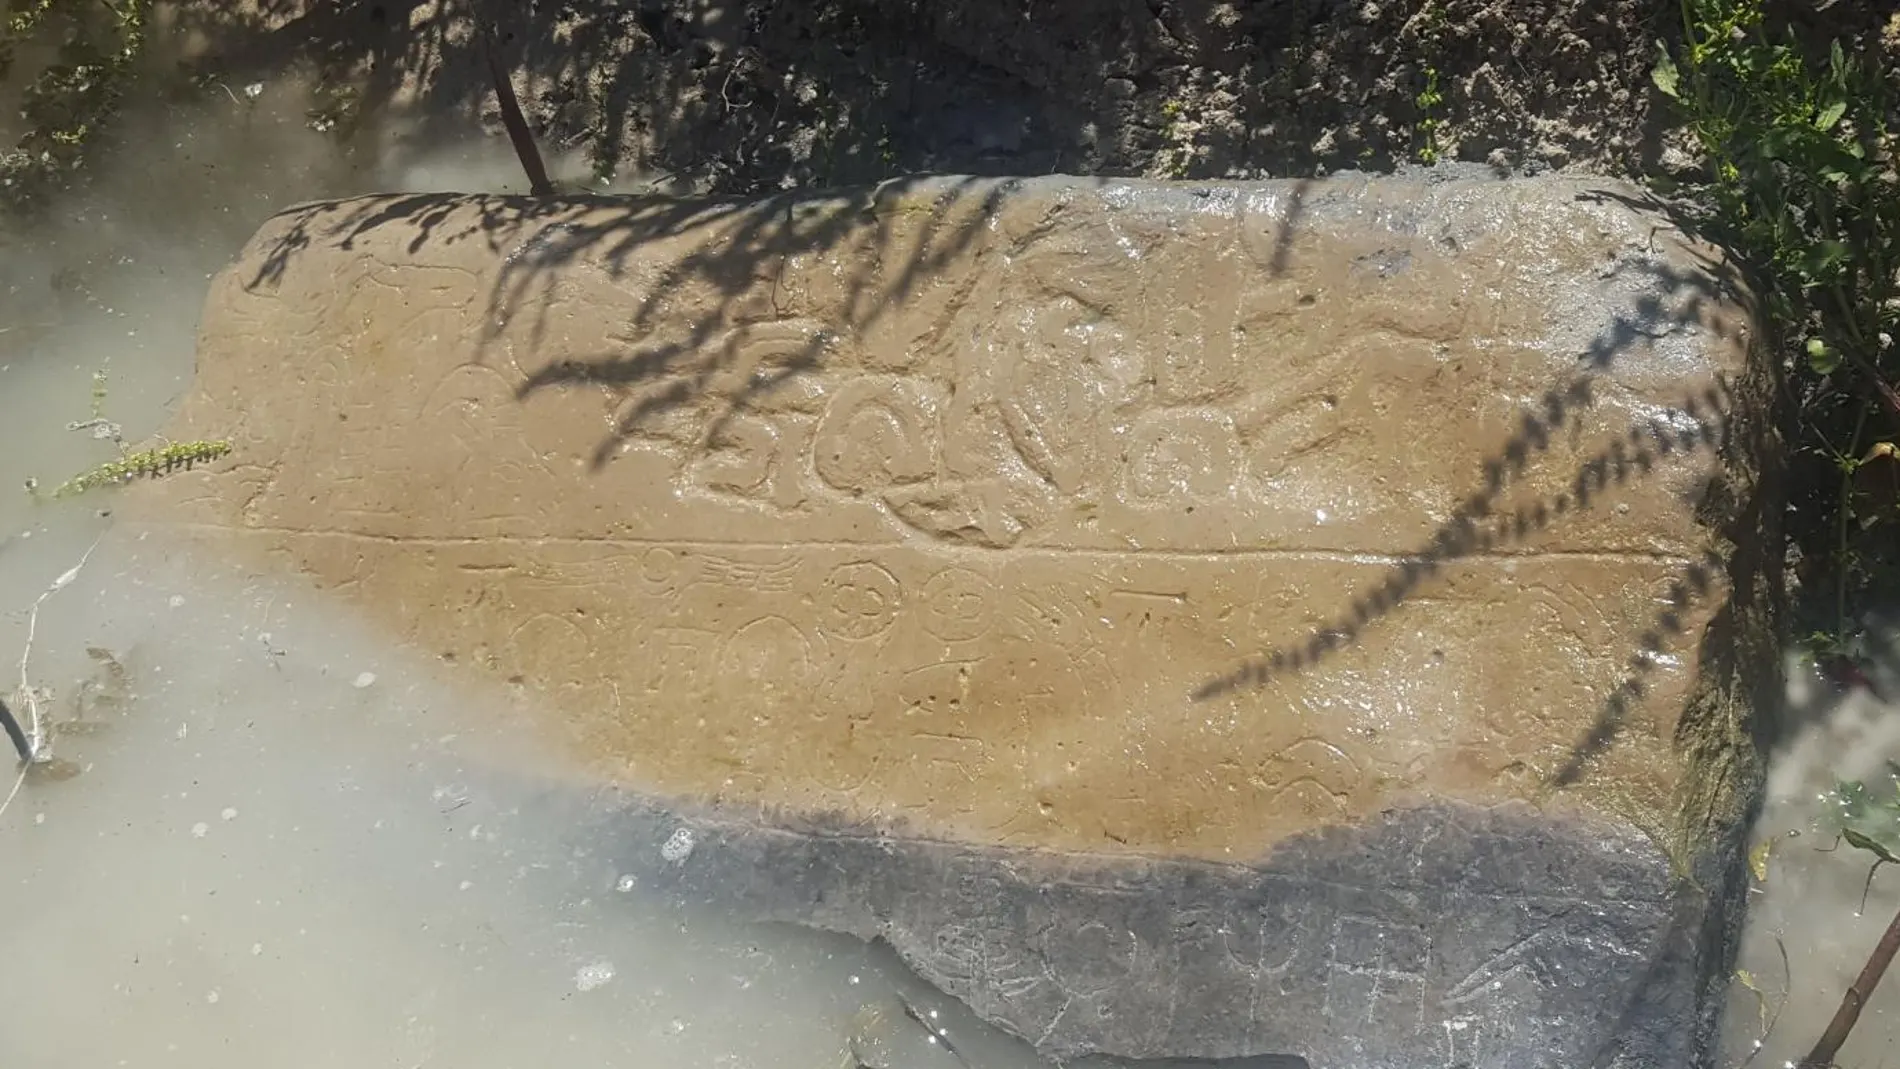 Un consejo de un agricultor turco local llevó a los arqueólogos a esta piedra medio sumergida en un canal de riego. Las inscripciones del siglo VIII a. C. todavía son visibles.